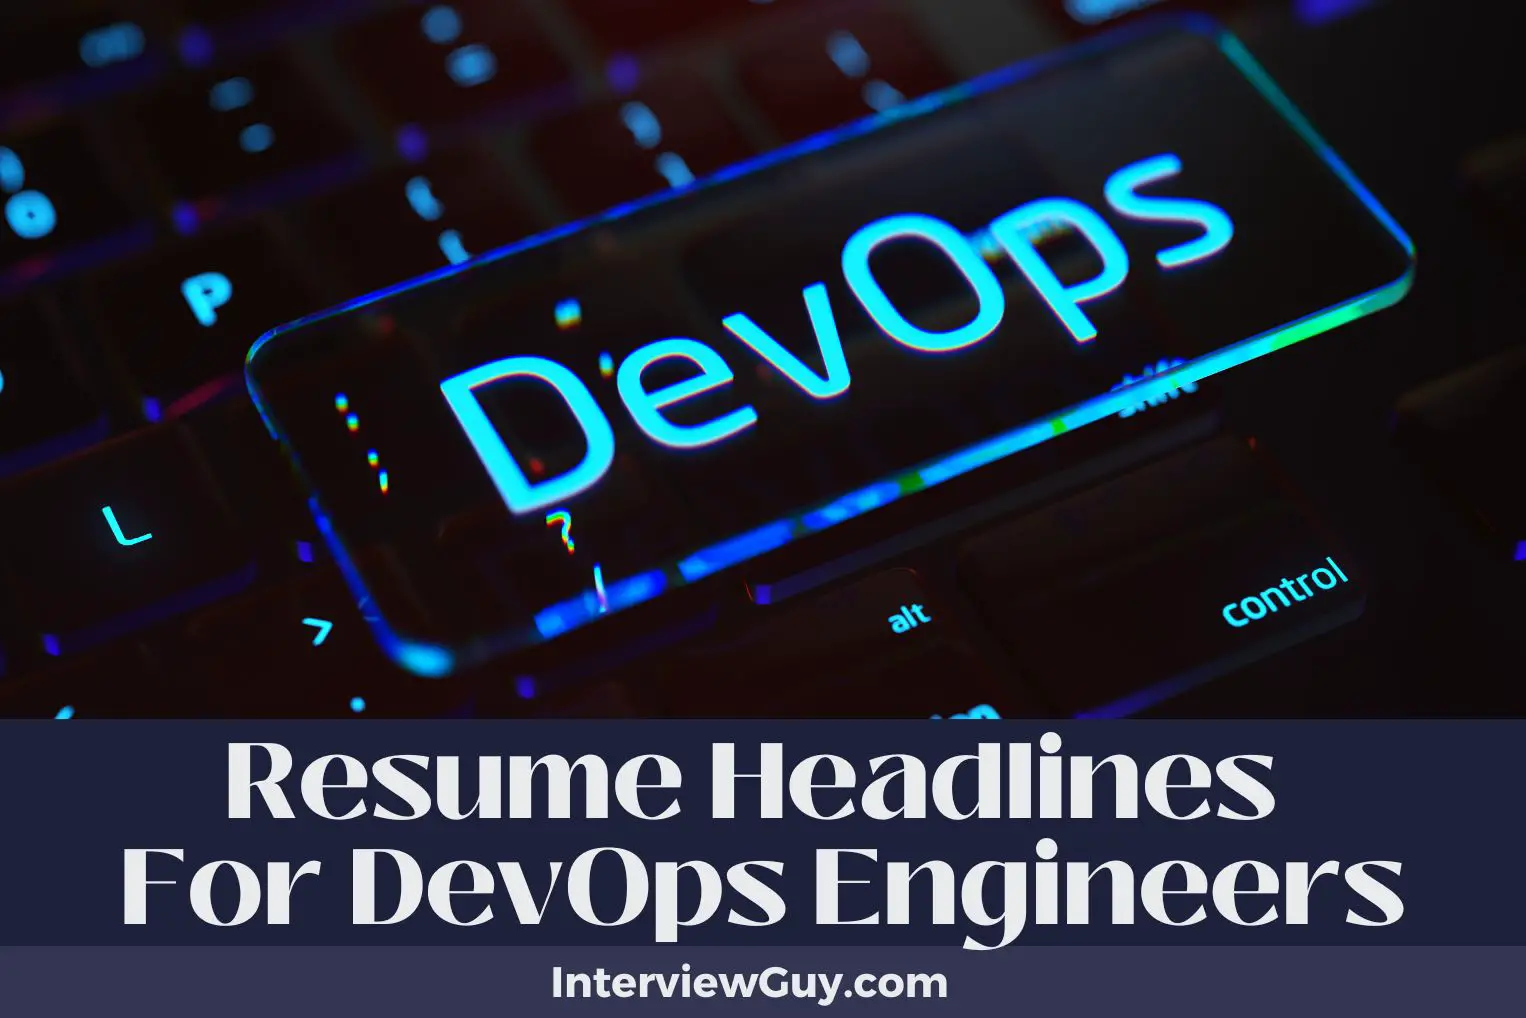 Resume Headlines For DevOps Engineers